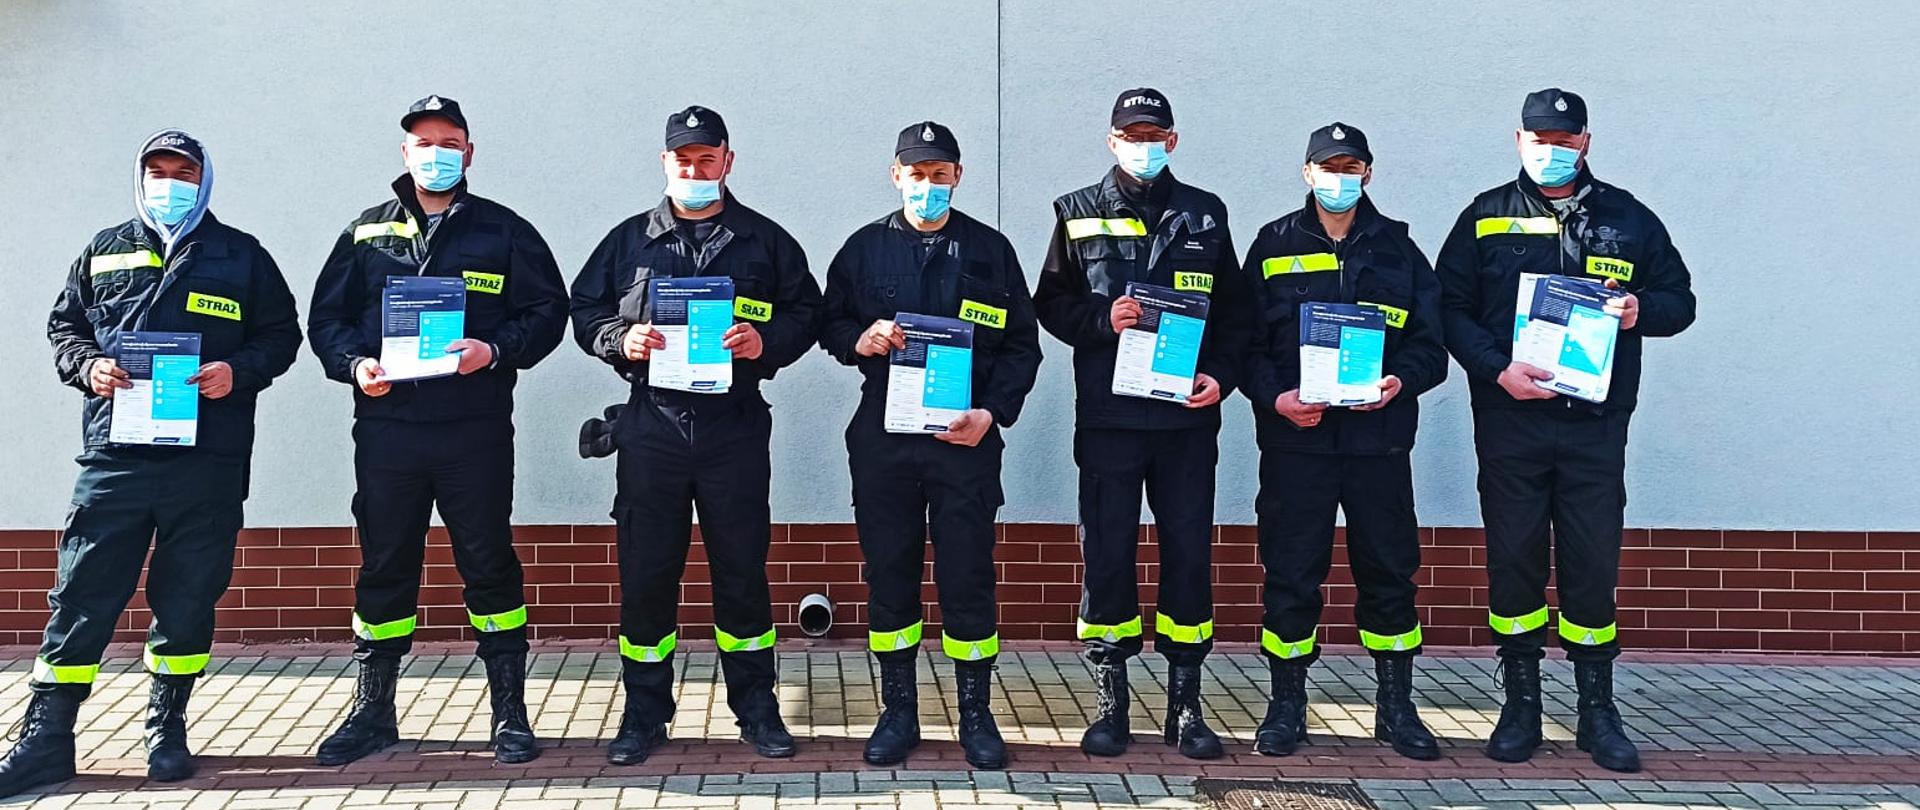 Zdjęcie przedstawia ośmiu strażaków z ulotkami w ręku na tle napisu OSP Stary Ujazd